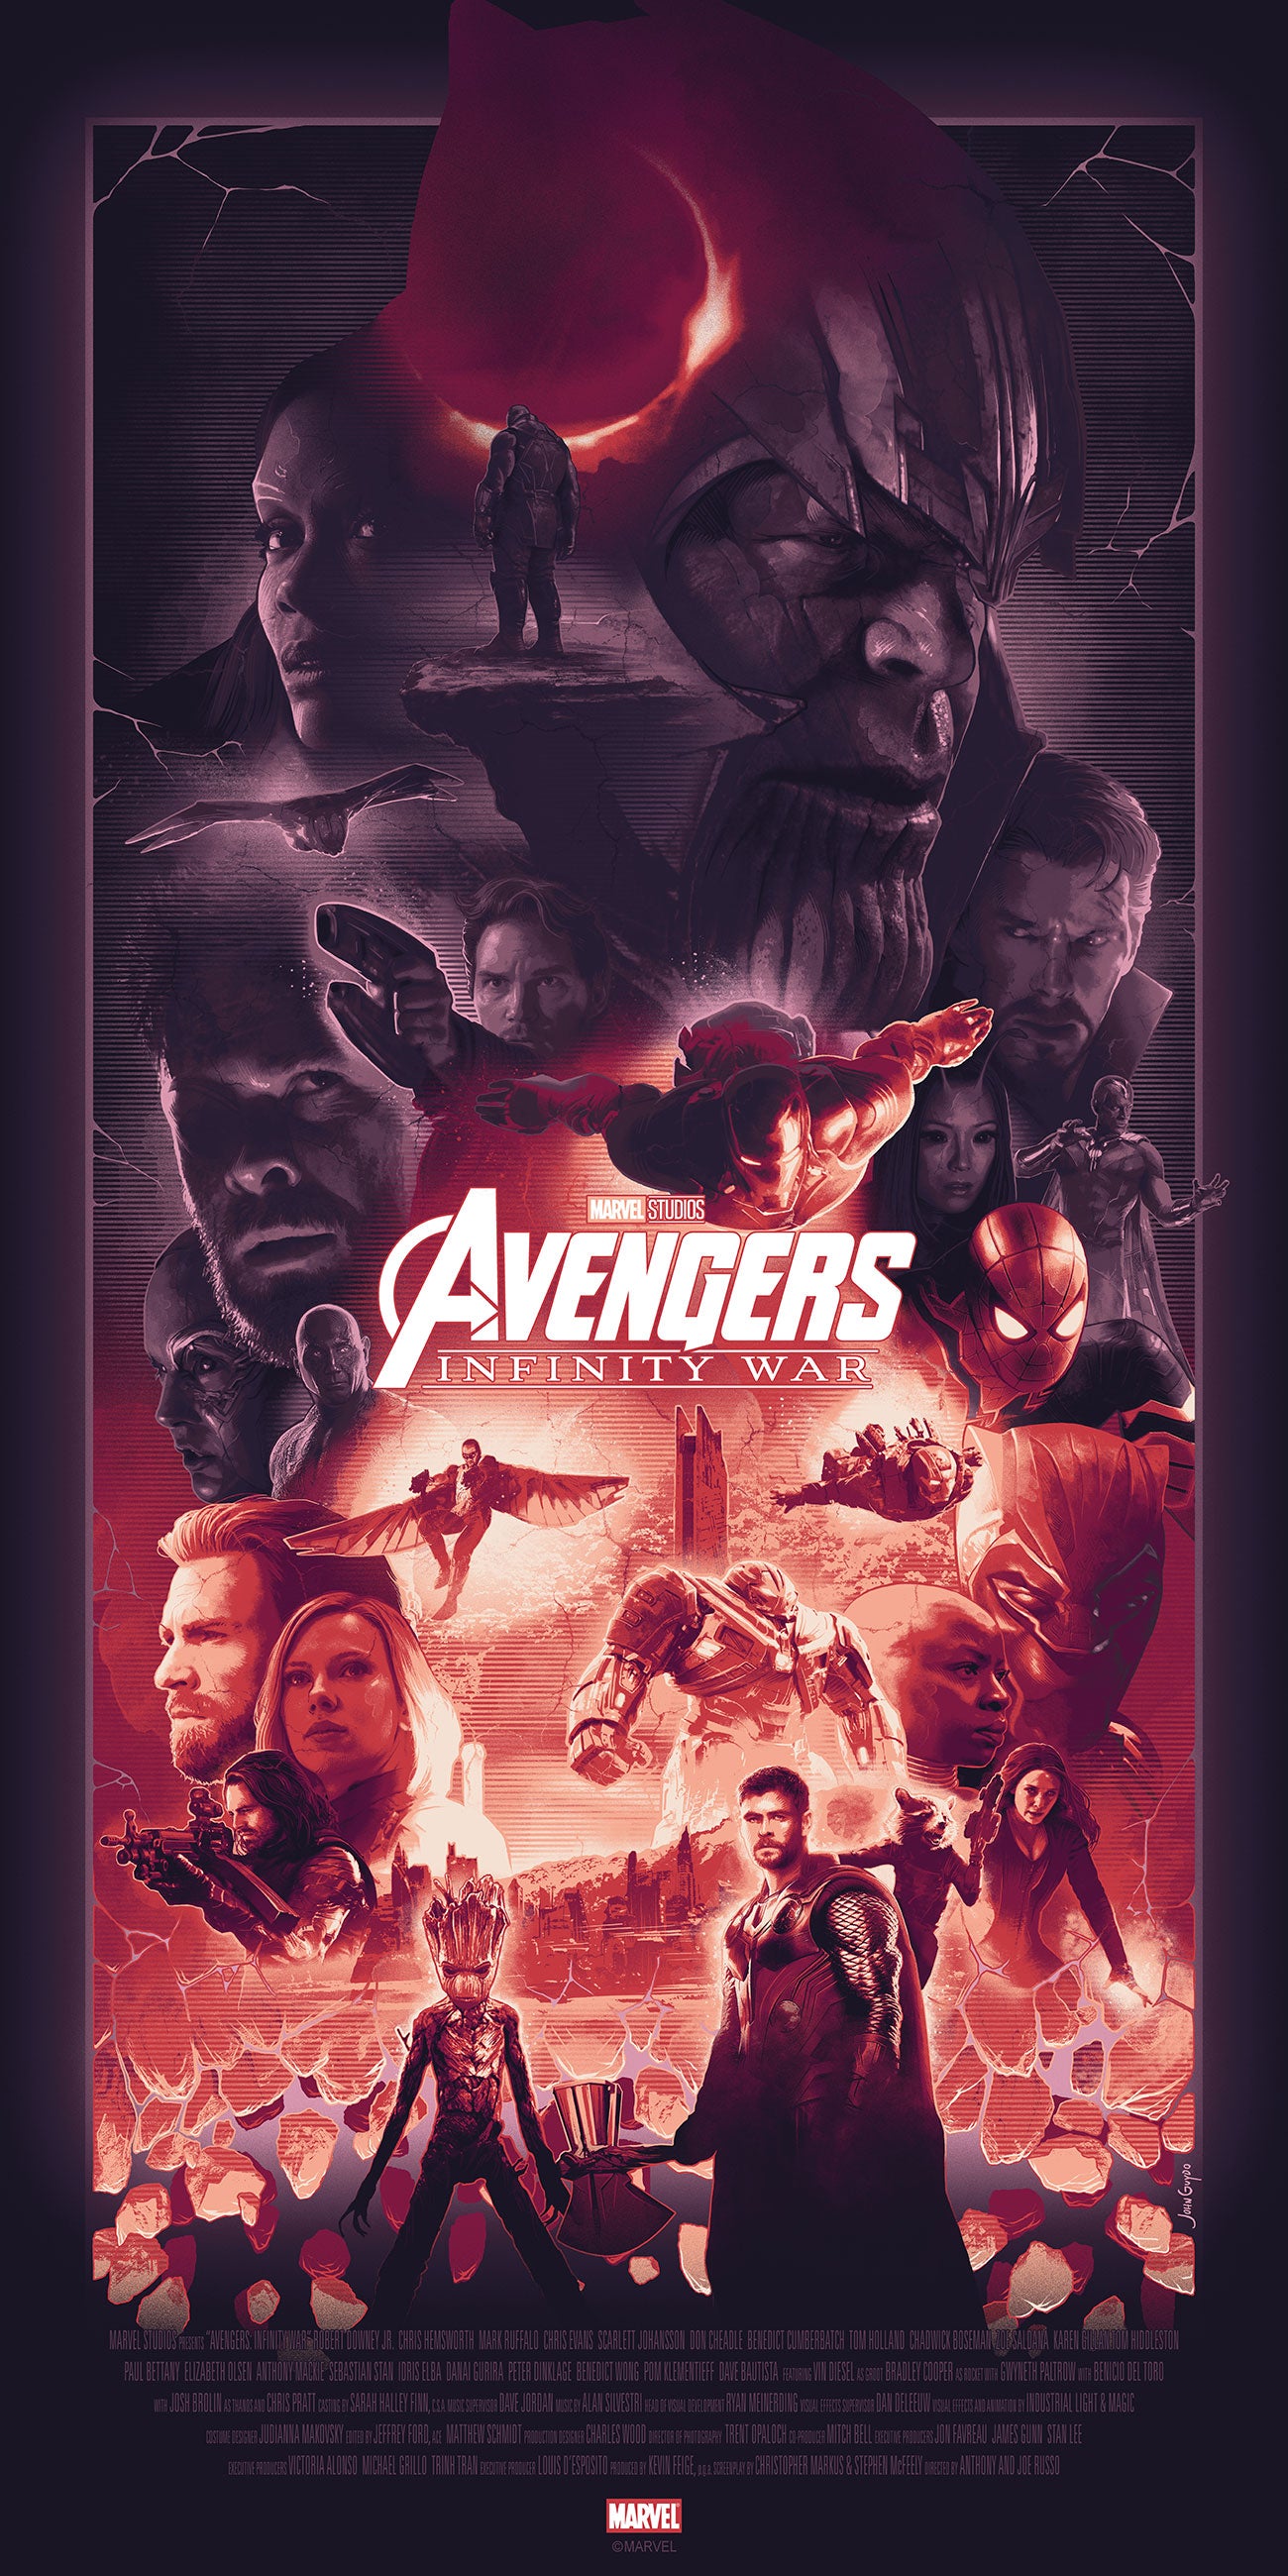 John Guydo "Avengers: Infinity War" Timed Edition